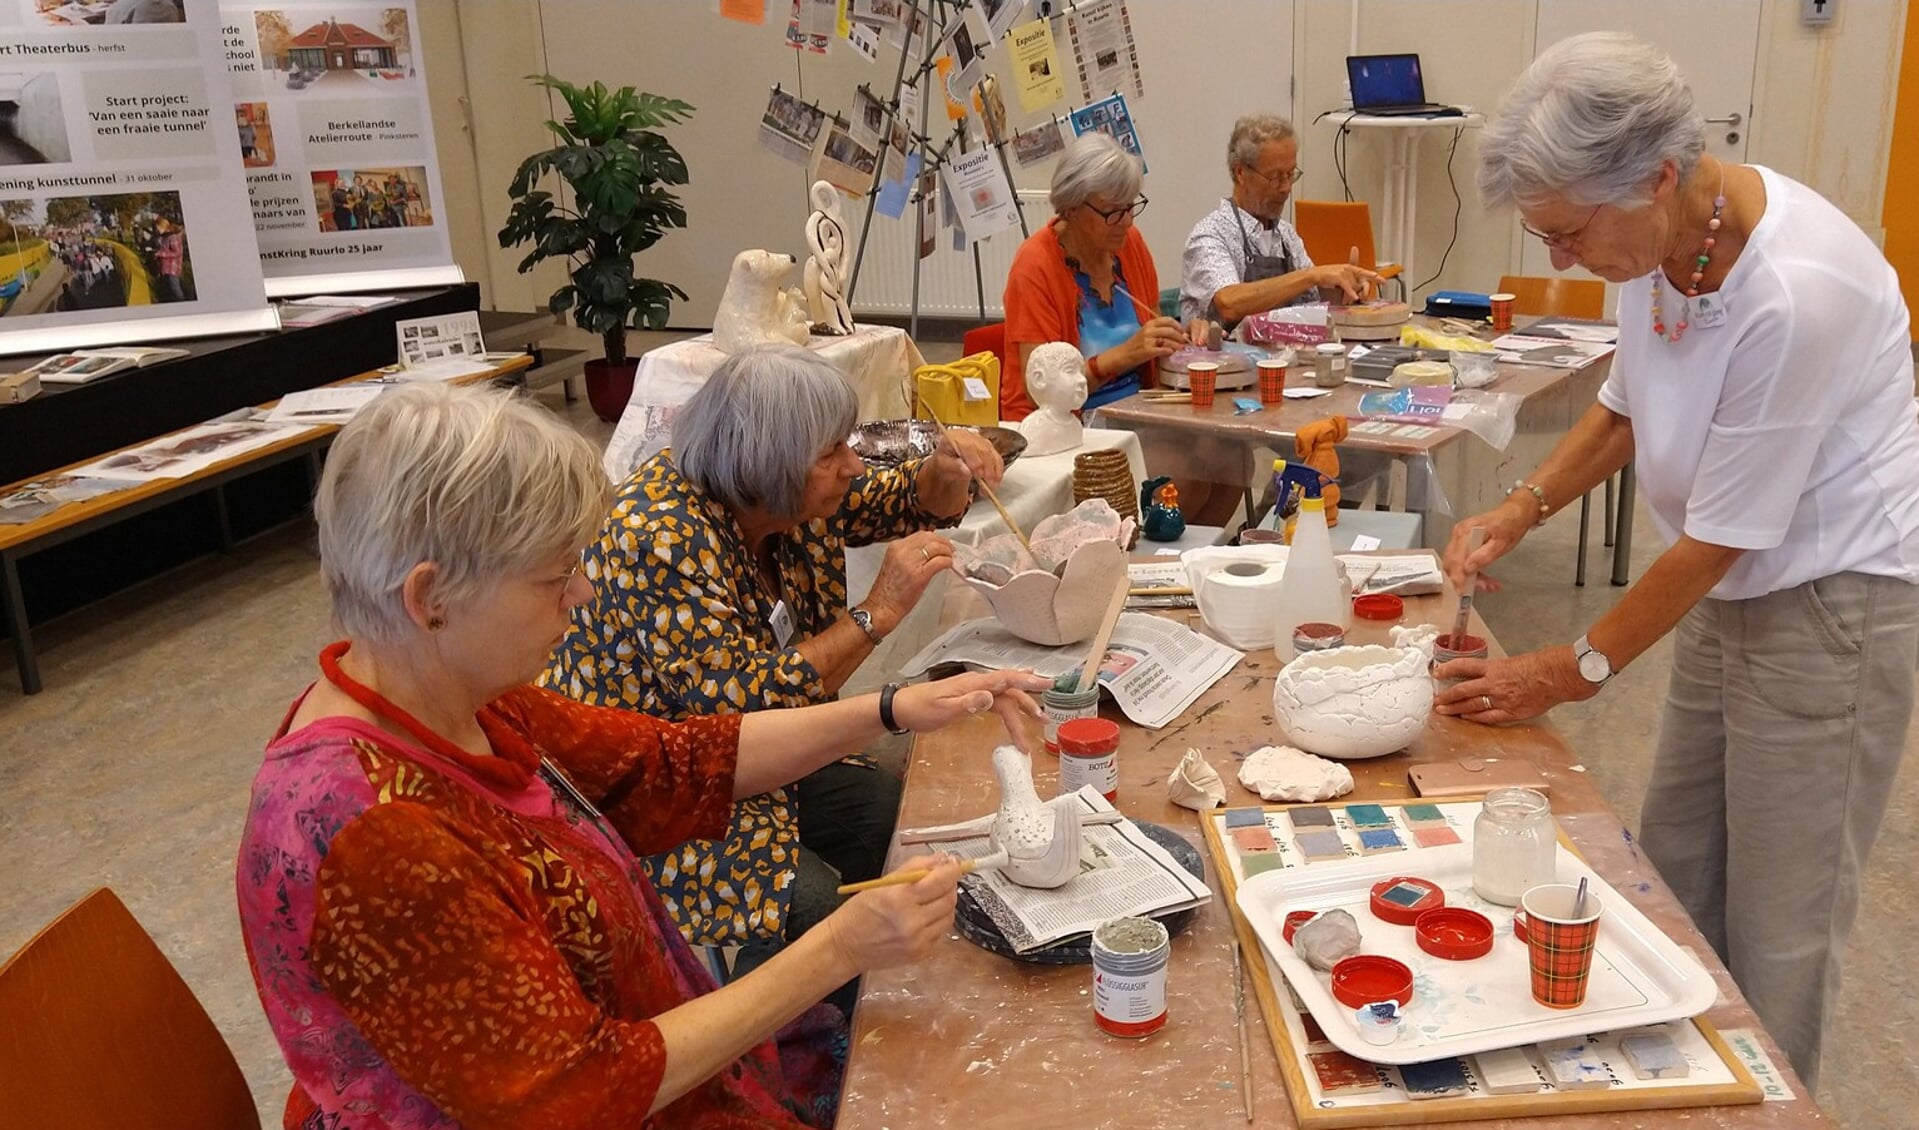 Het Open Atelier schilderen en boetseren zorgt voor inspiratie en gezelligheid. Foto: PR